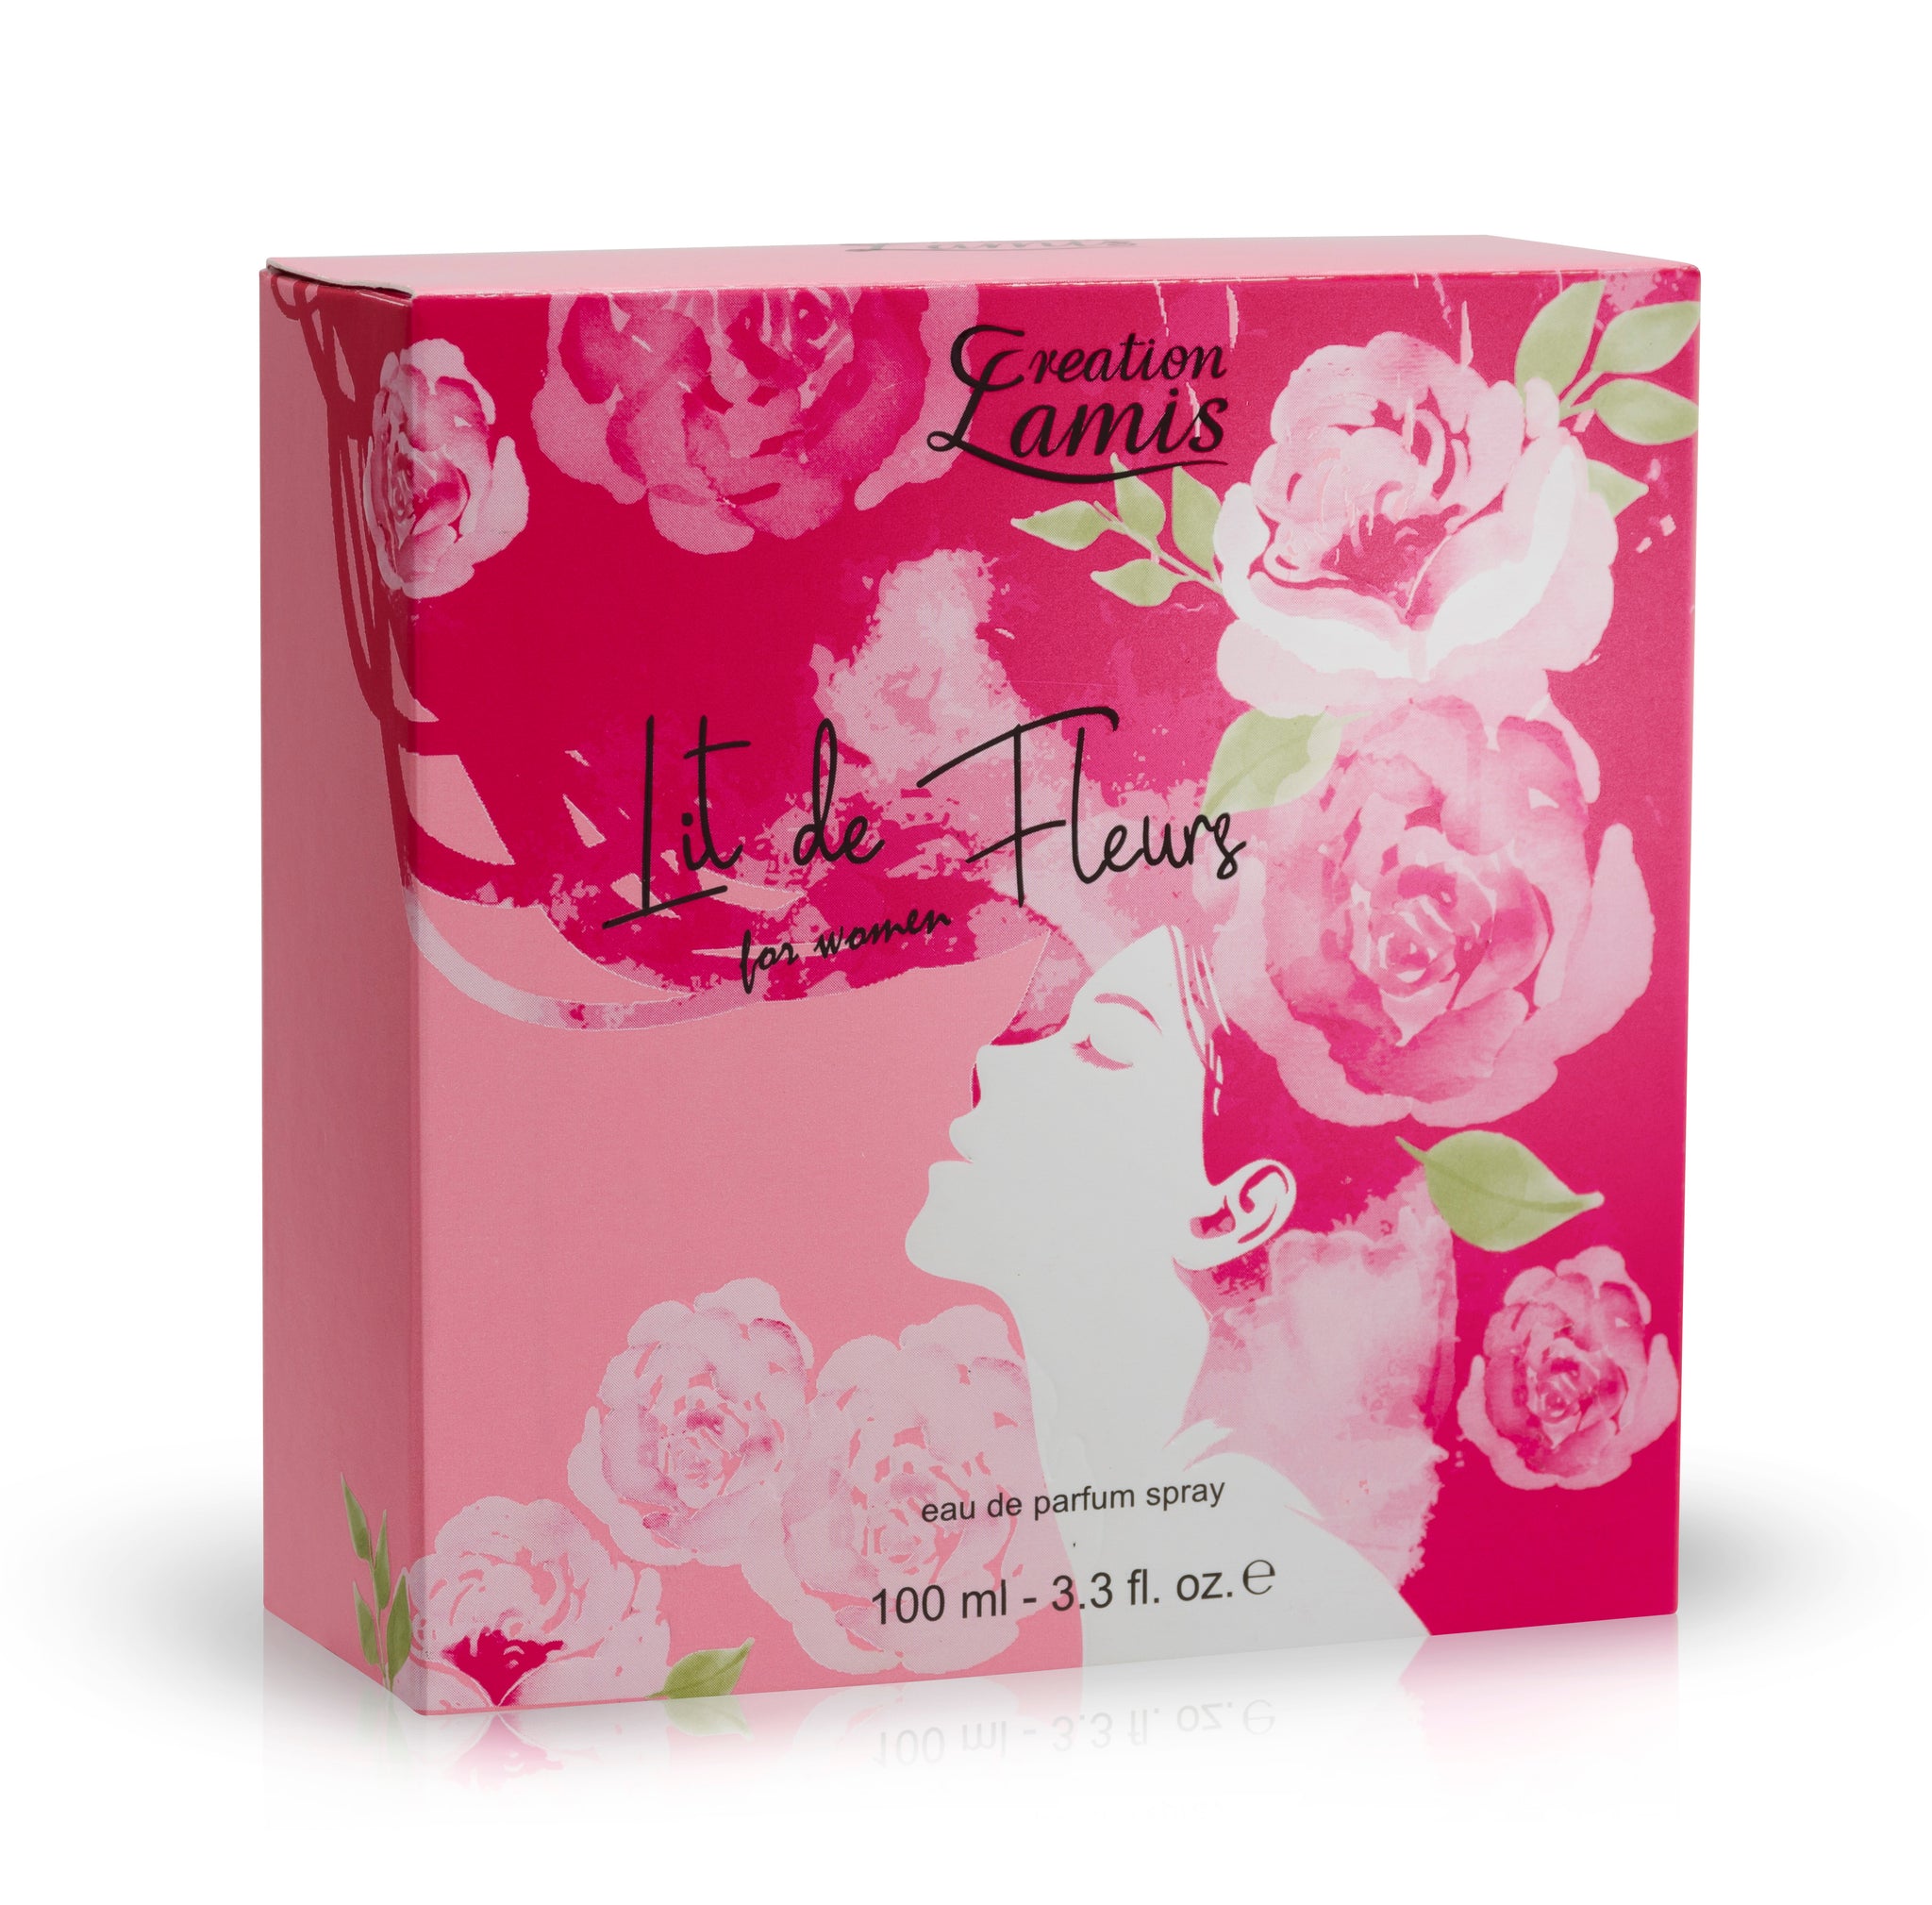 Eau de Parfum: Creation Lamis LIT DE FLEURS - Women's Fragrance